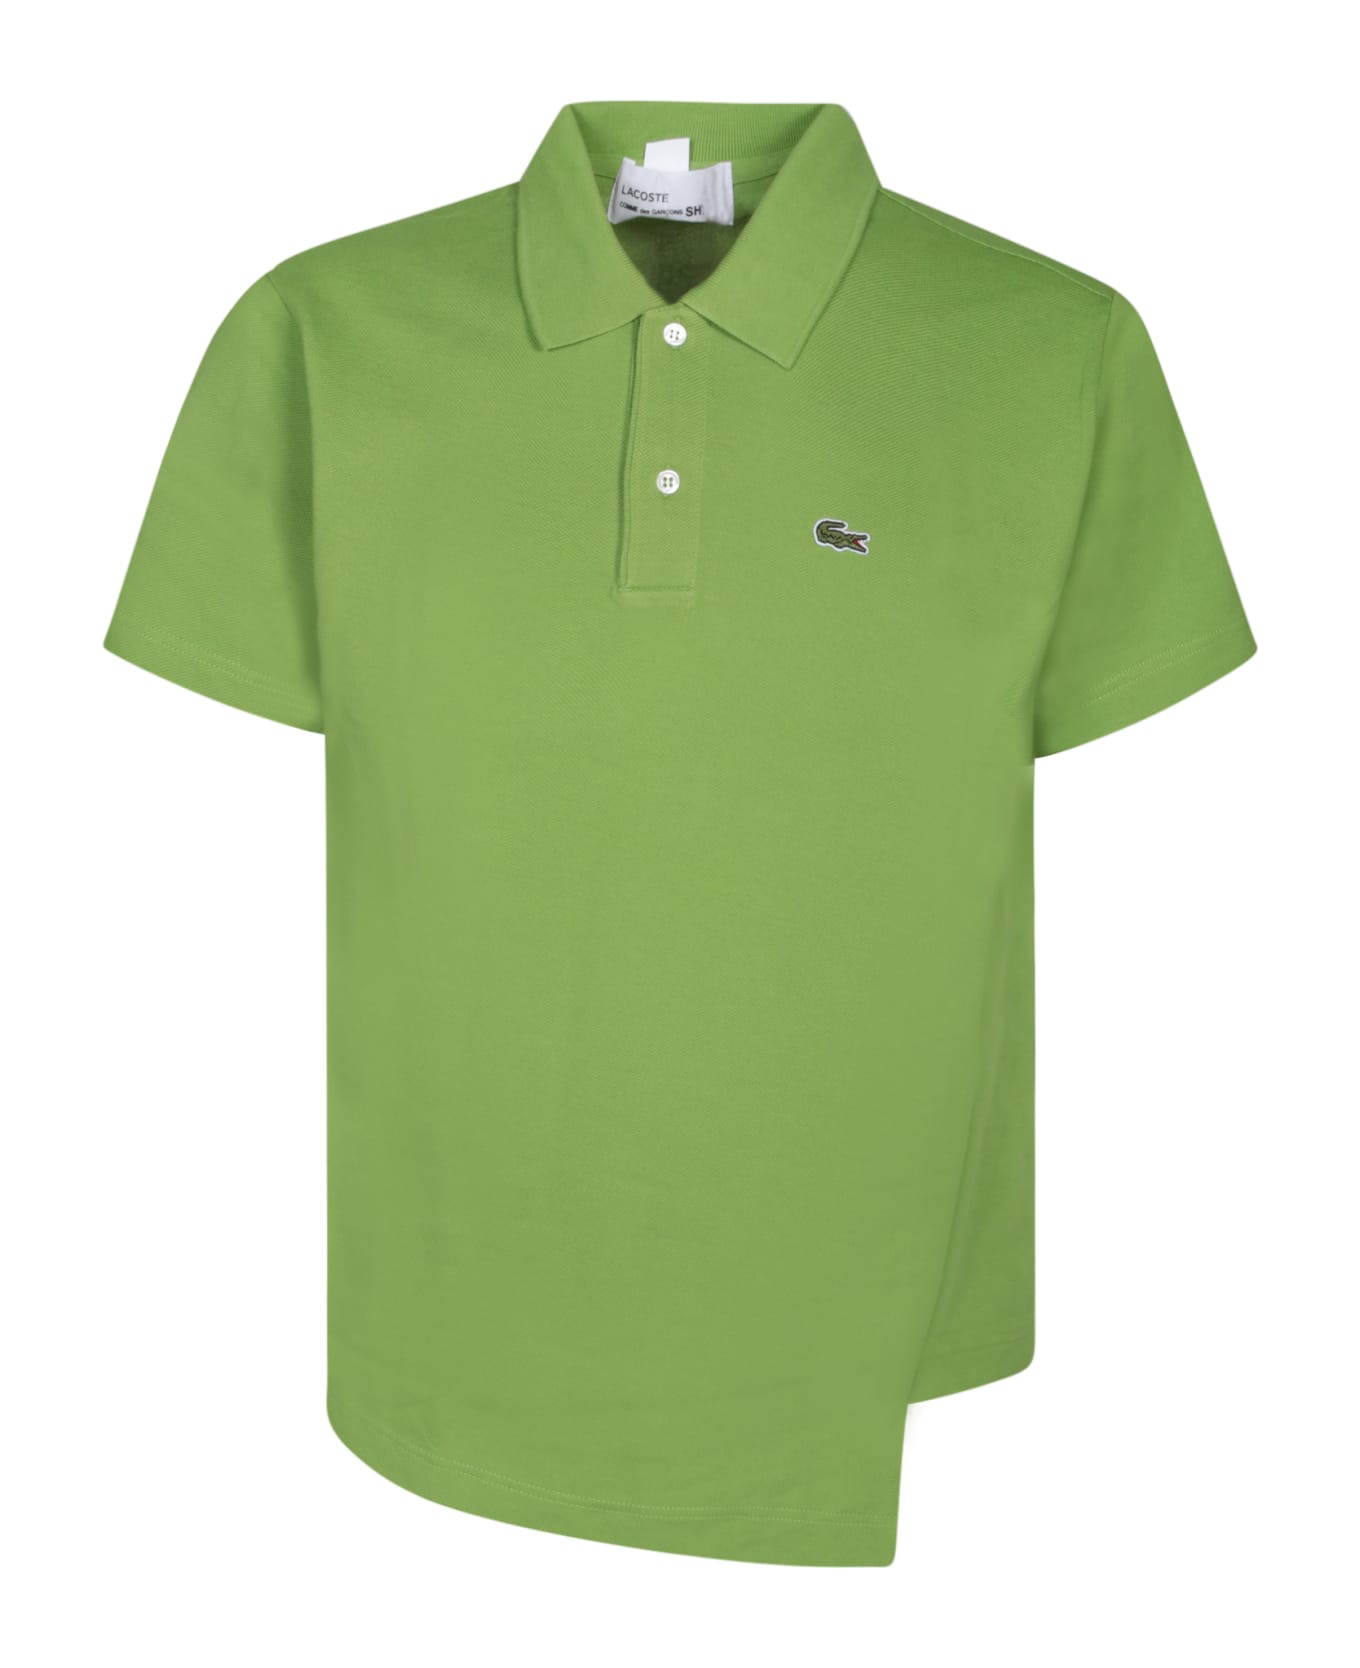 Comme des Garçons Shirt Boss Asymmetric Green Polo Shirt - Green